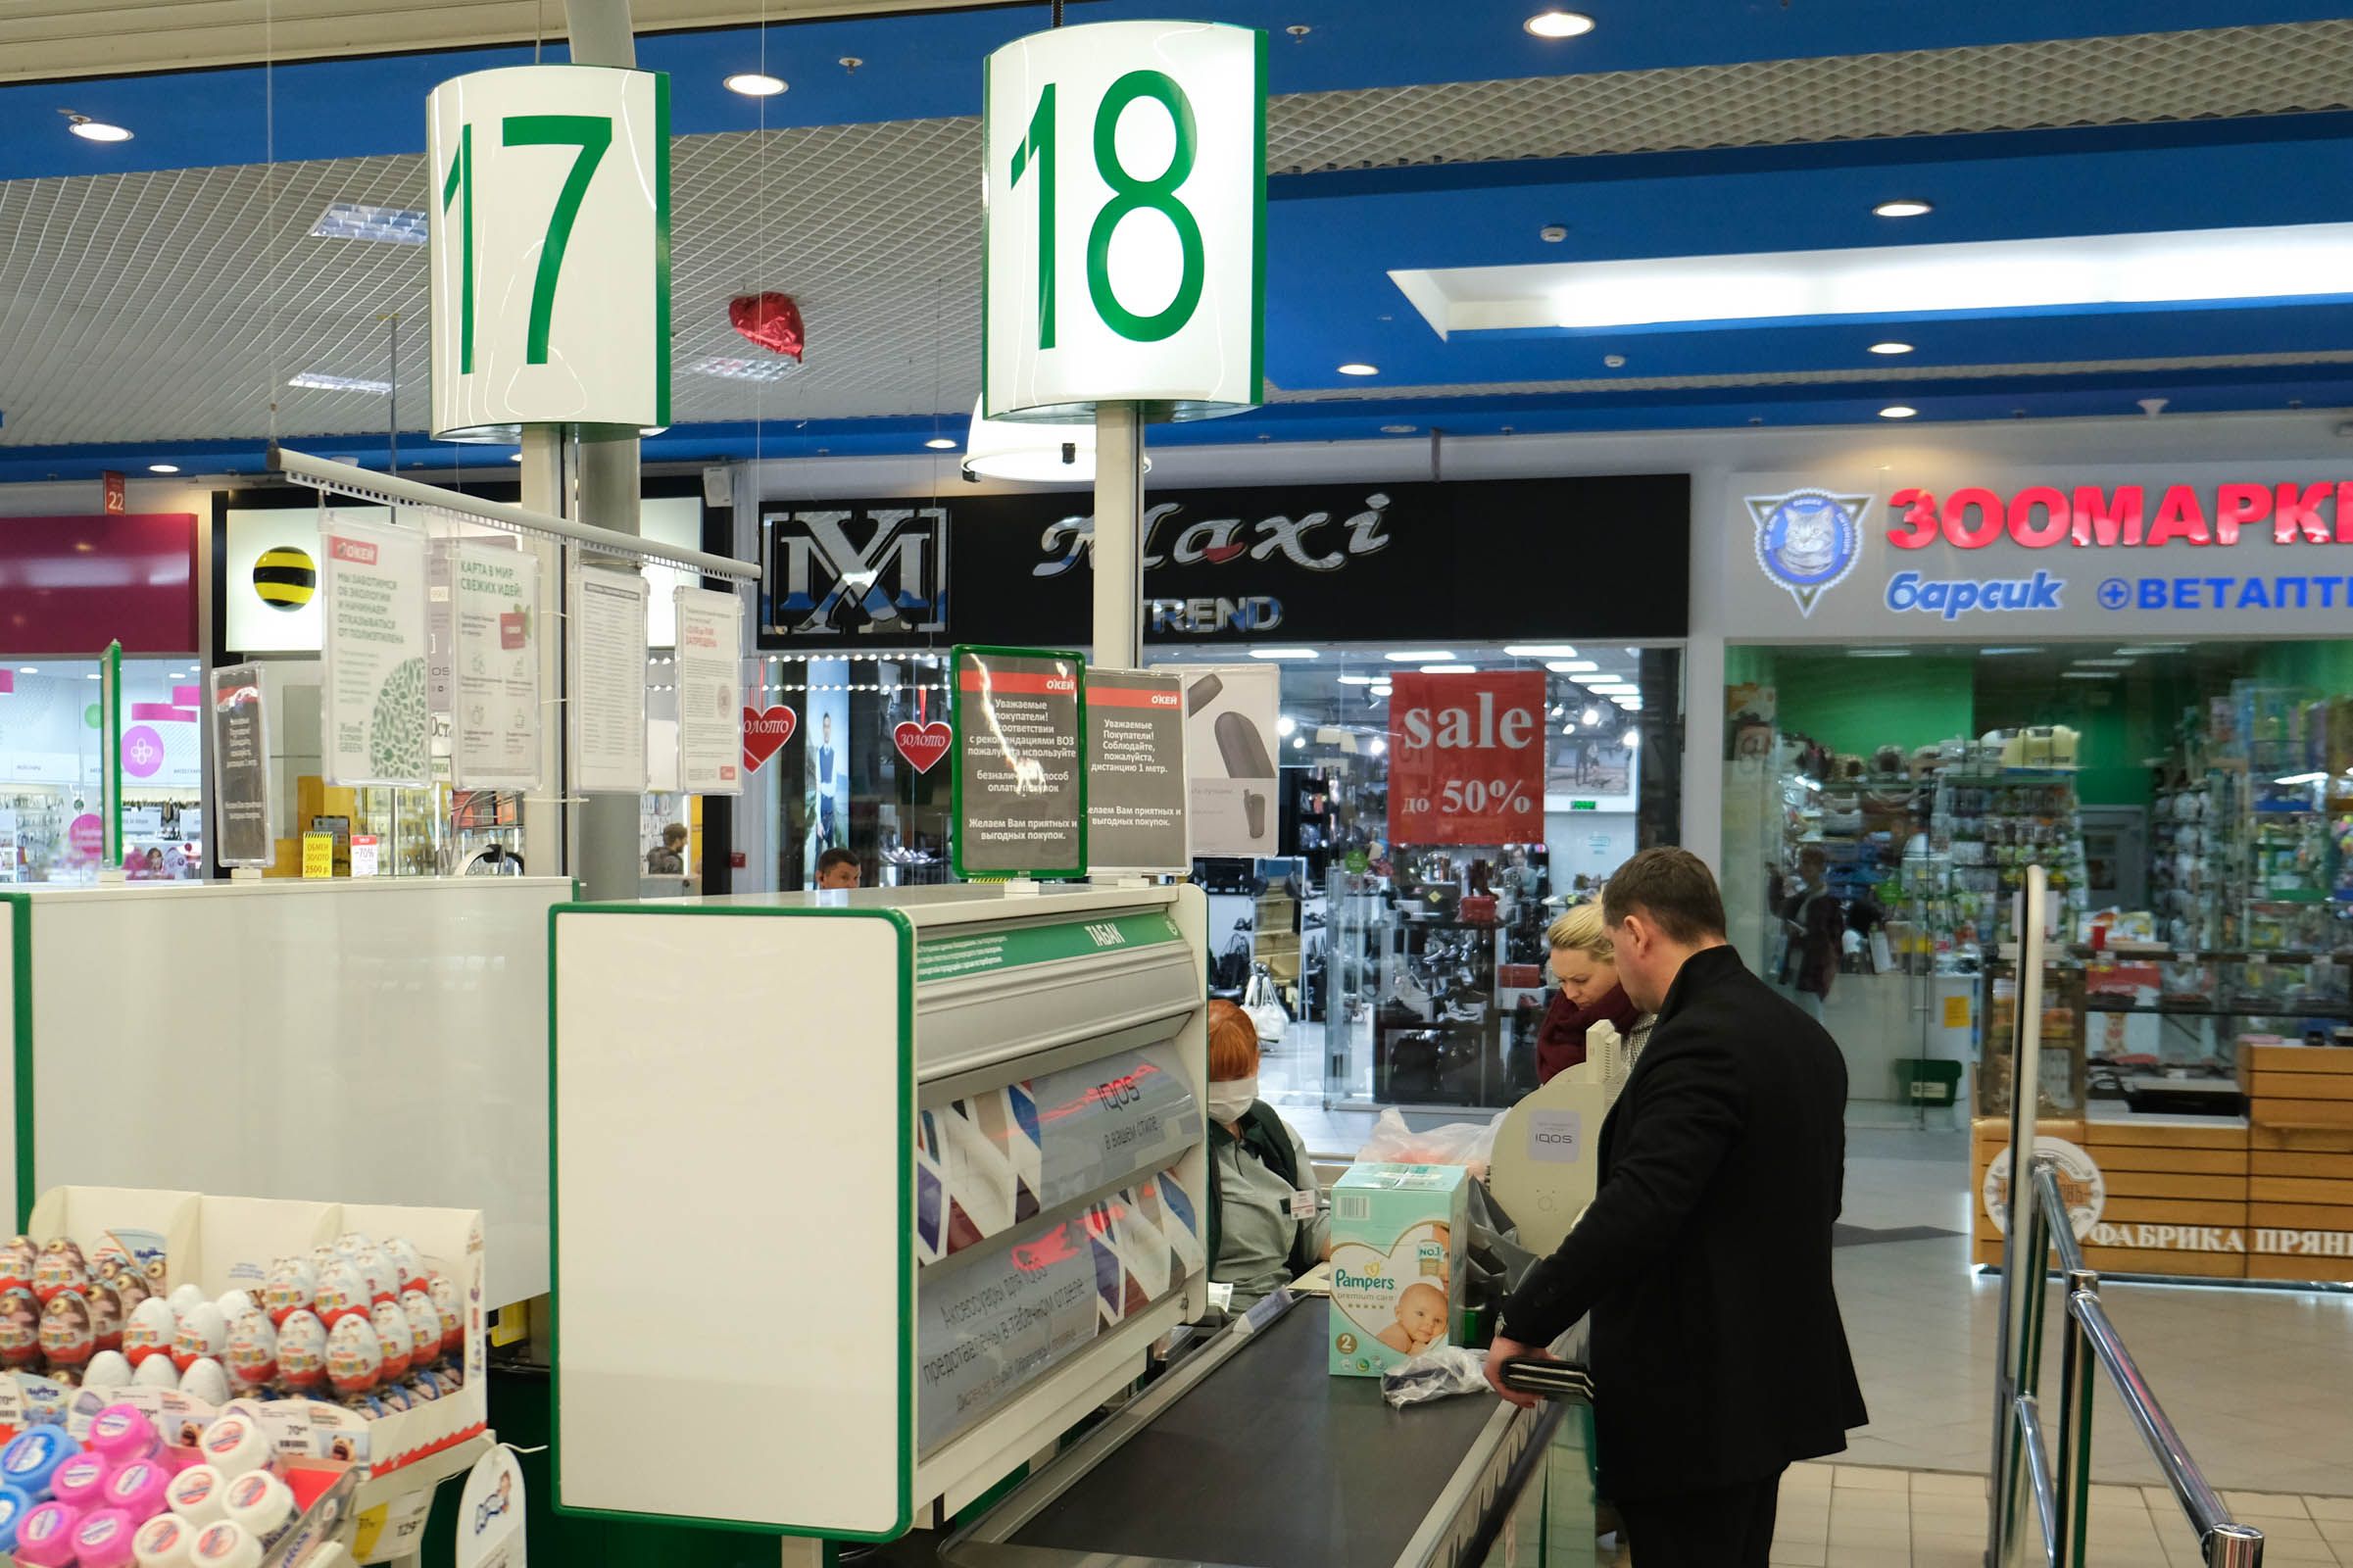 Сайт ел центр. Краснодар малый. Какие гипермаркеты есть в Краснодаре. Открыт ли арнада Zoo в торговом центре АРТАЛ.